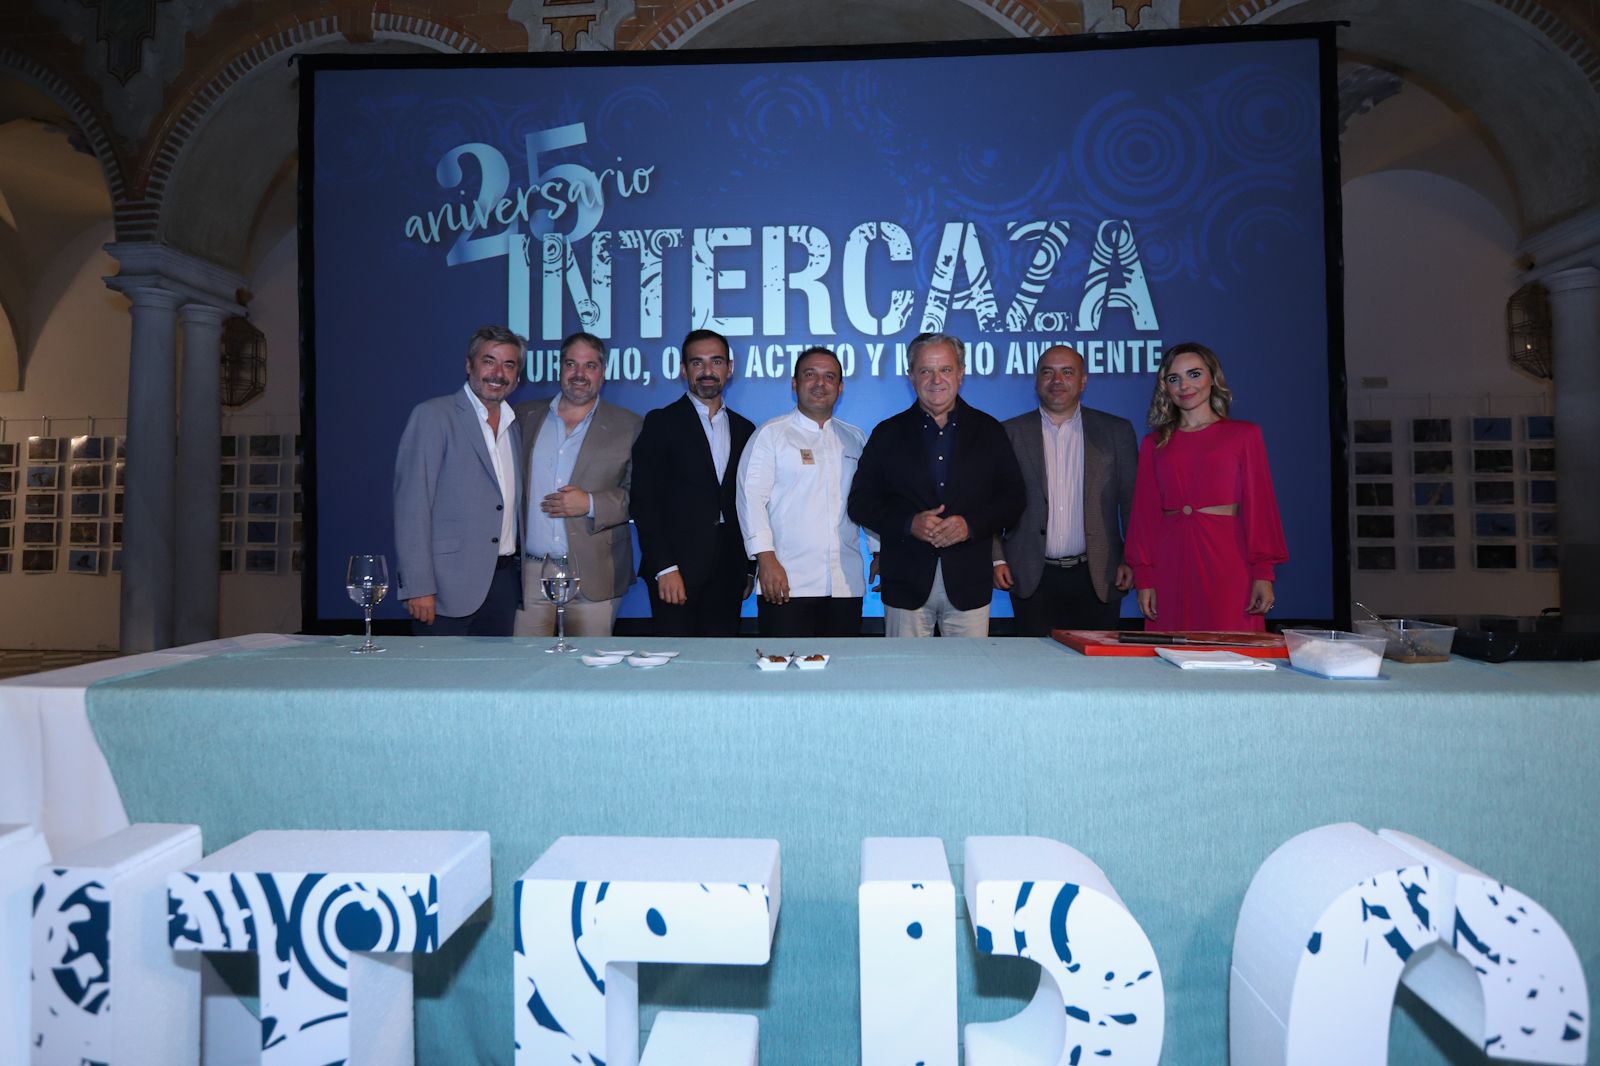 Un showcooking inaugura el 25 aniversario de Intercaza